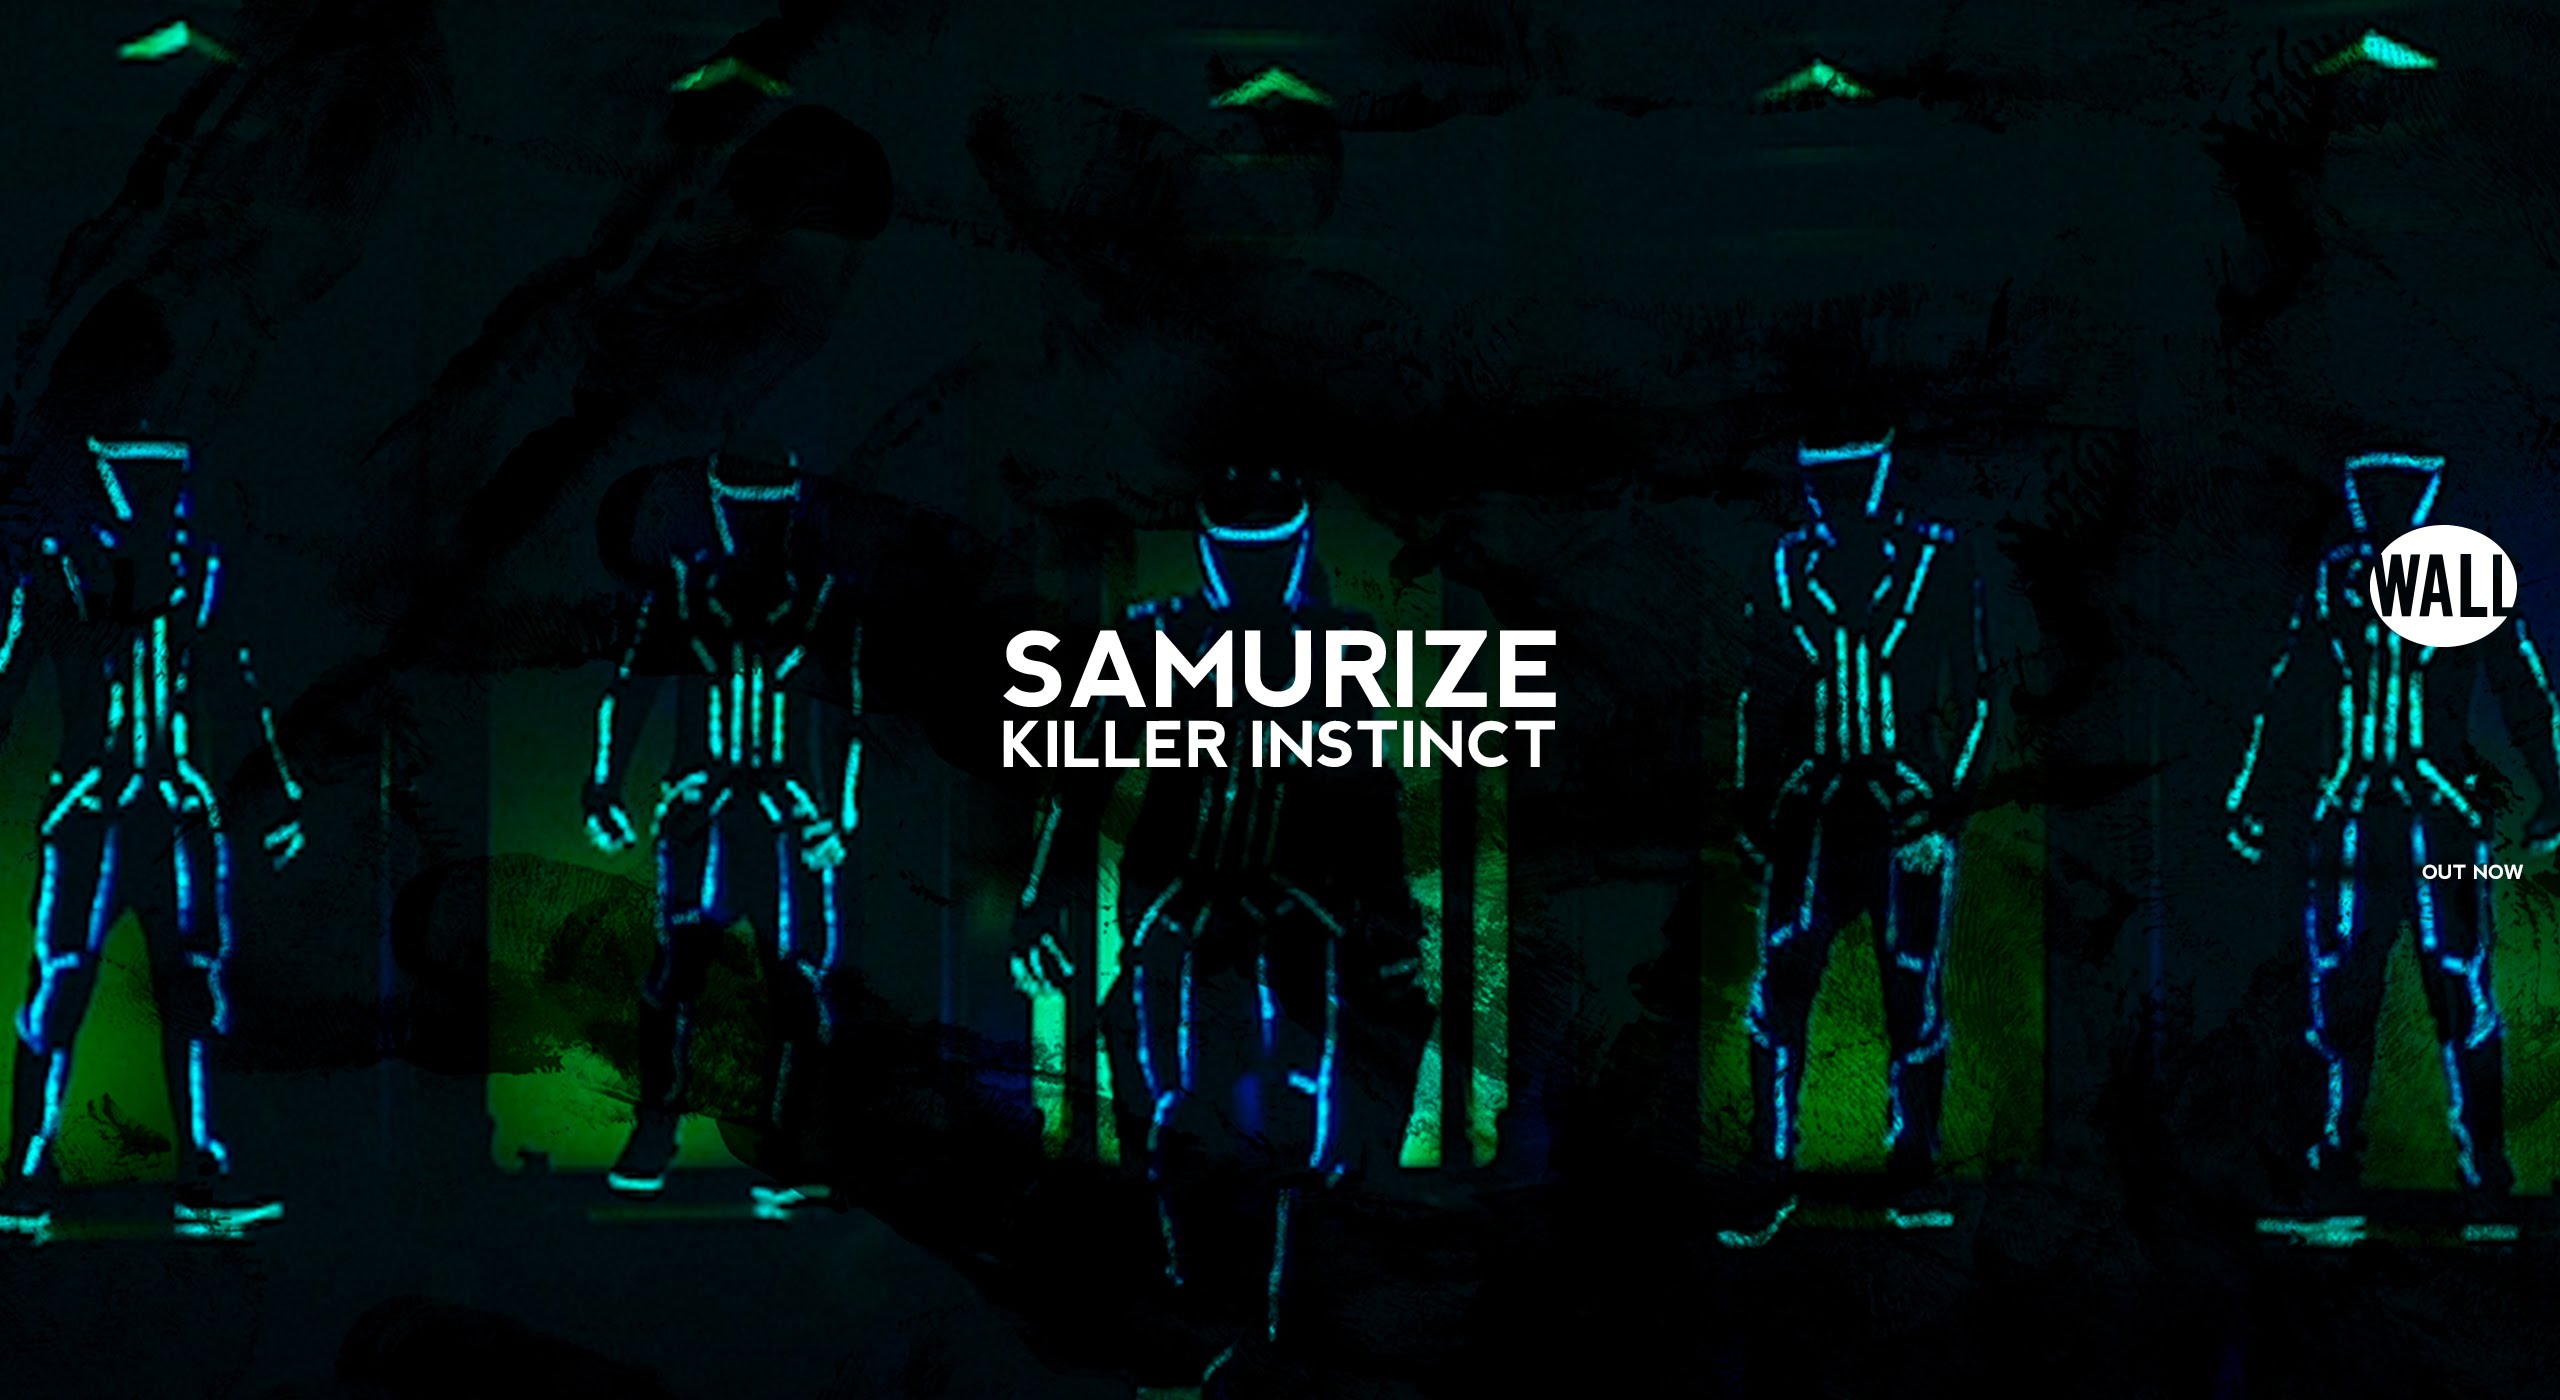 SAMURIZE - Killer Instinct (Official Video) - YouTube